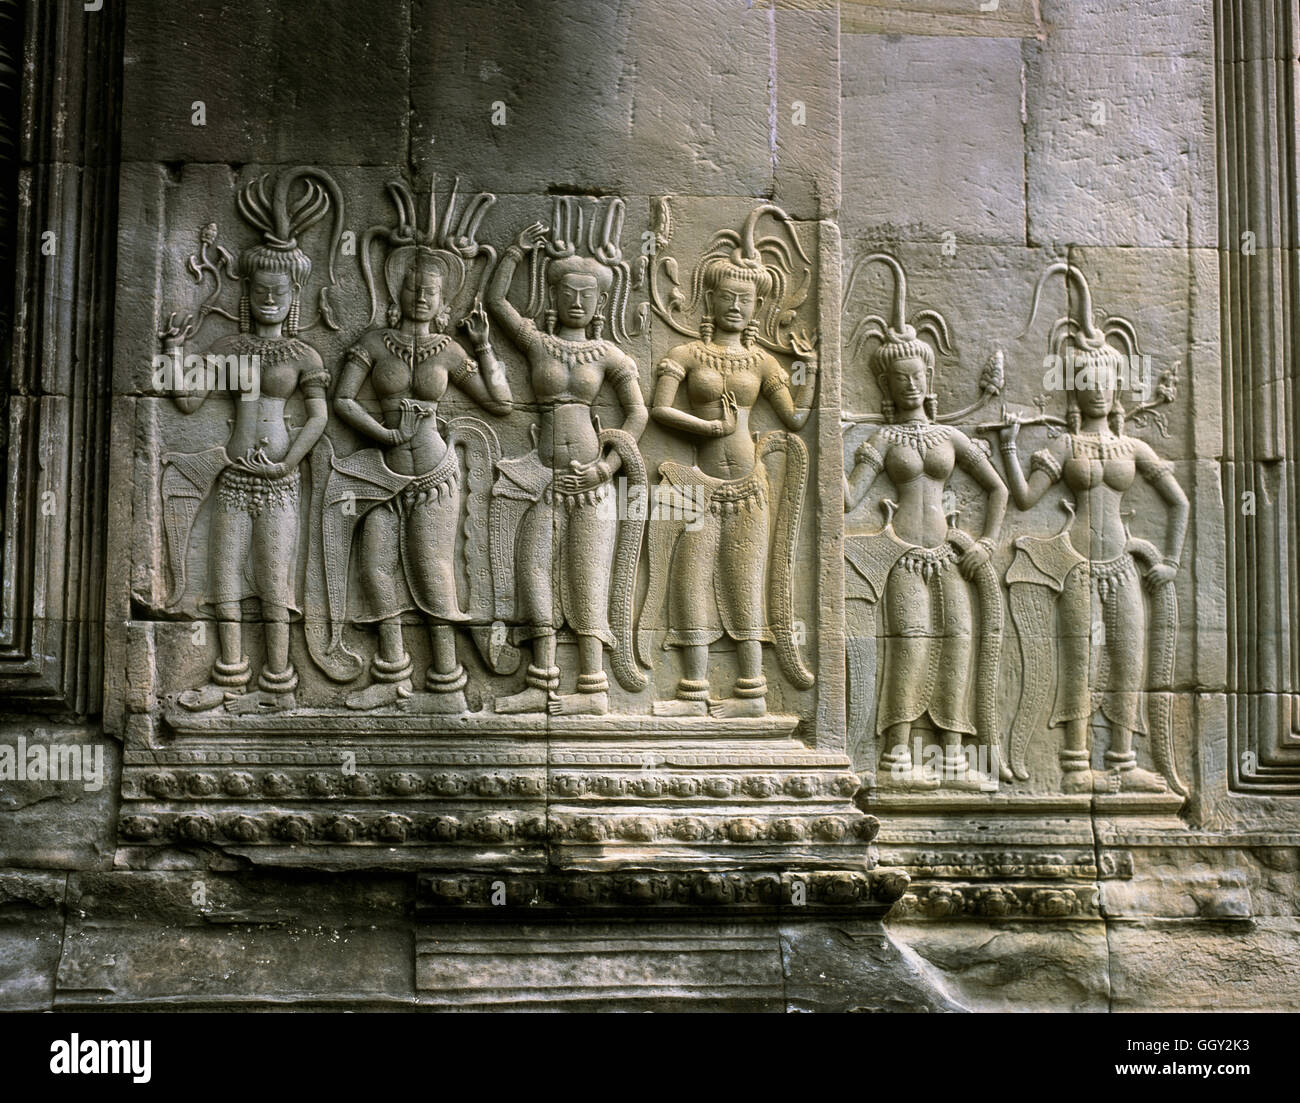 Divinidad Femenina cifras sobre una pared alivio - patio del nivel superior de Angkor Wat. Siem Reap, Camboya. Foto de stock